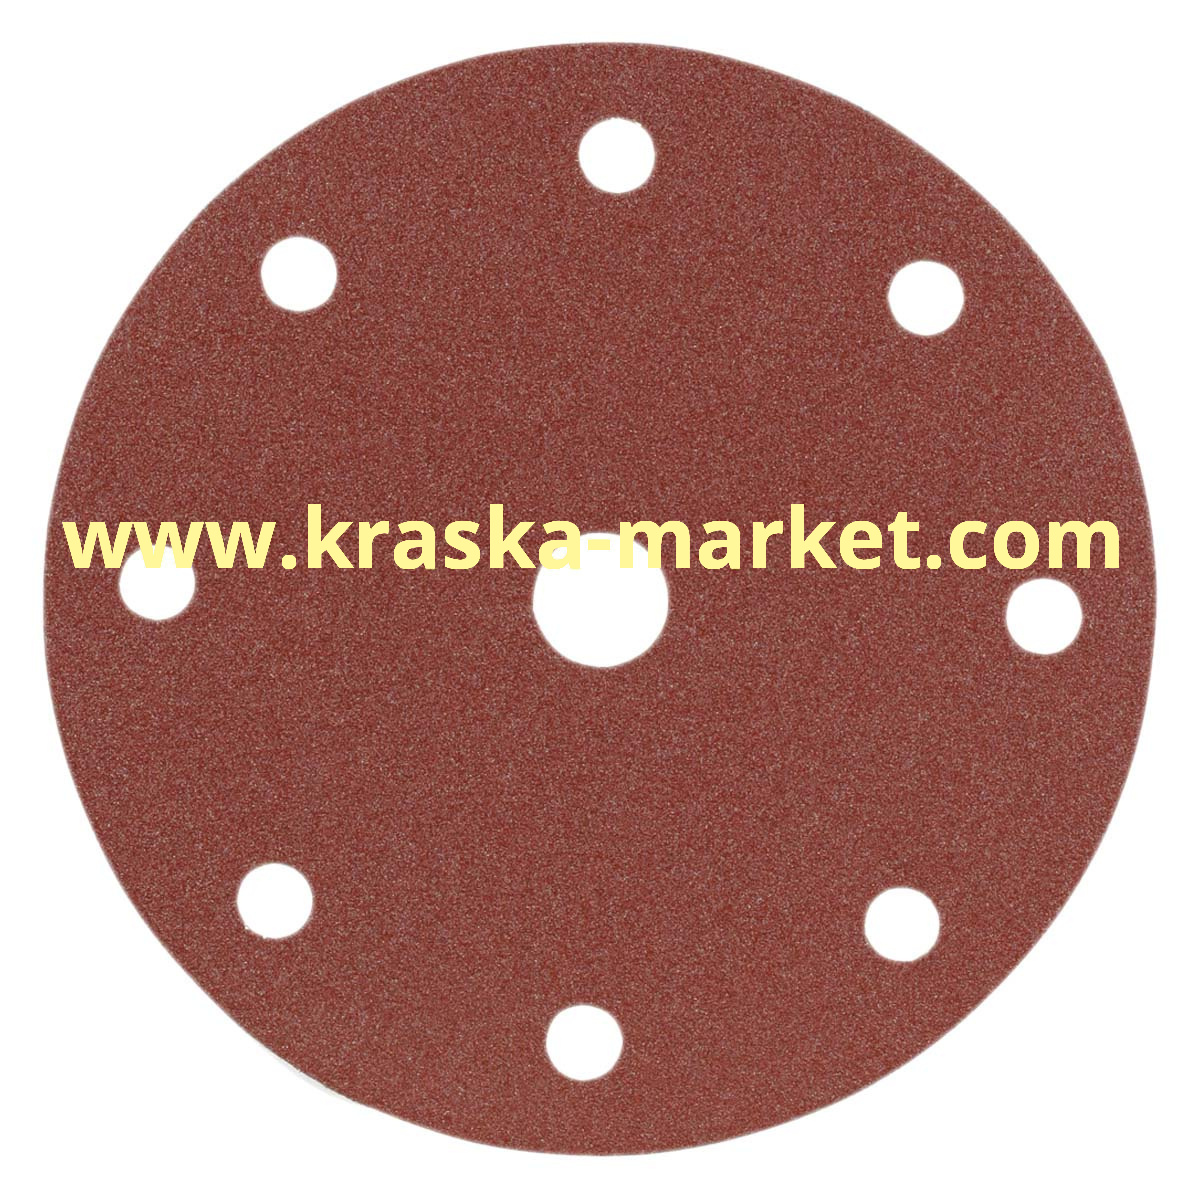 Круг абразивный, красный, 15 отверстий, Р600, 150 мм. Производитель: Indasa.